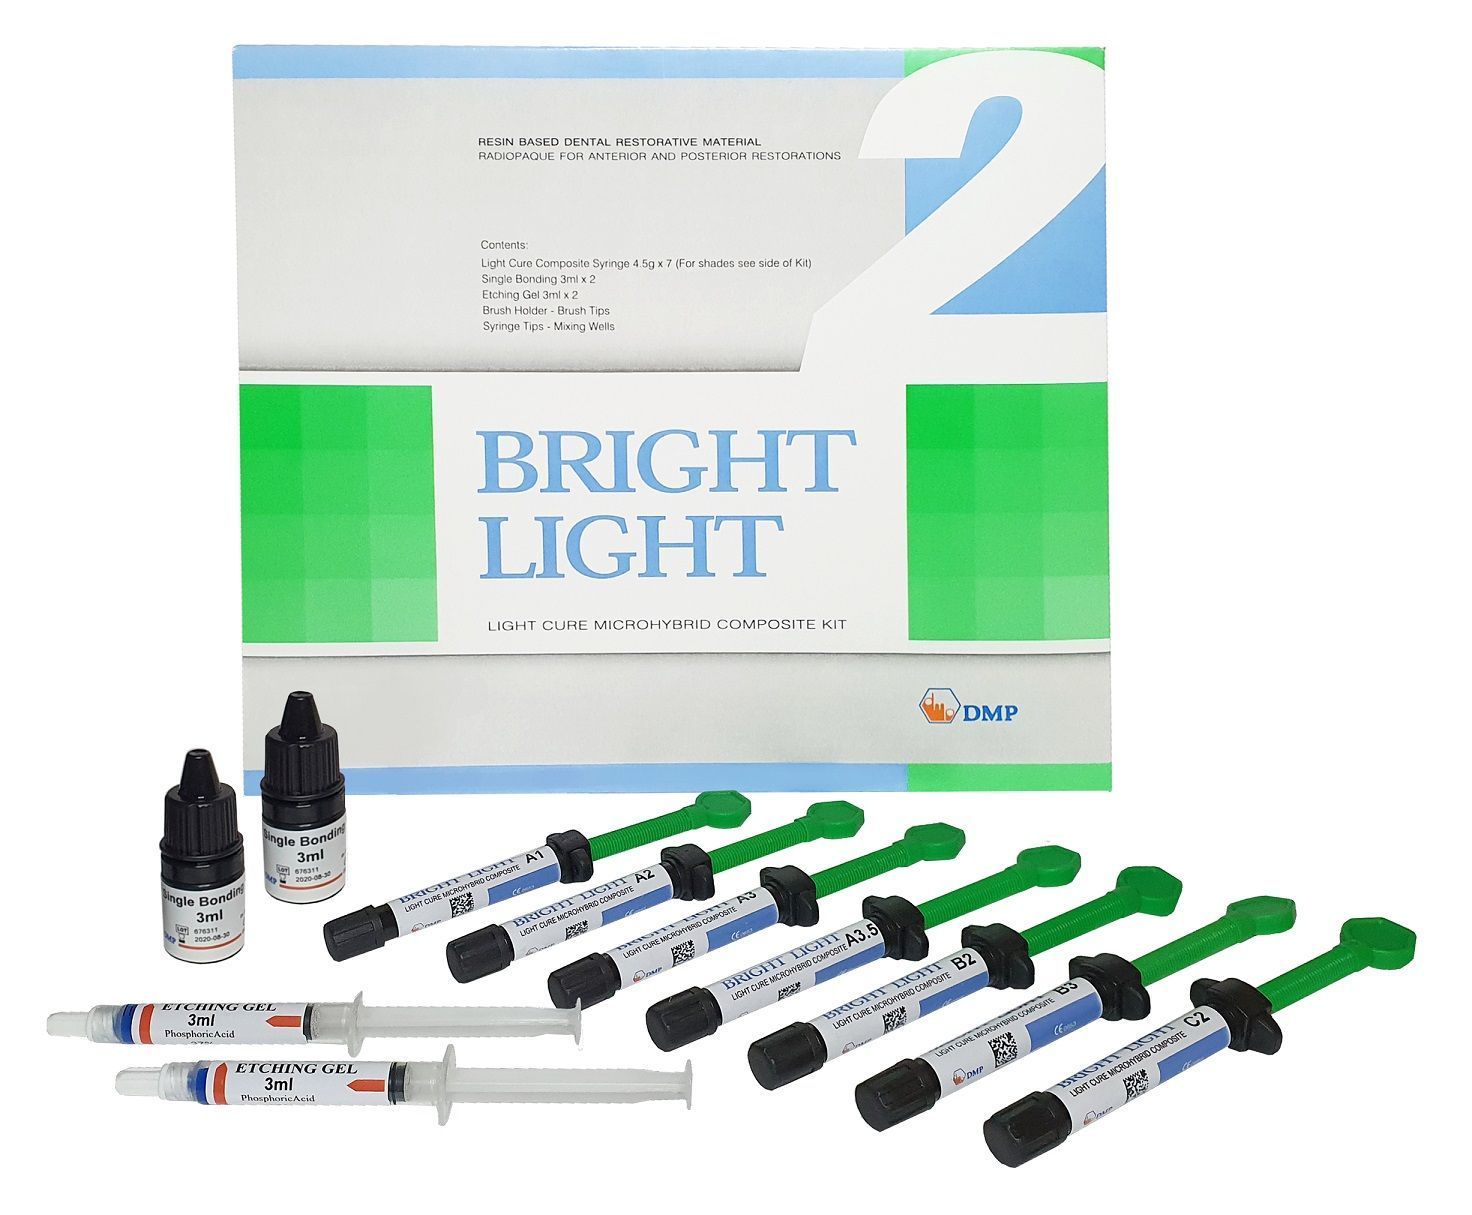 BrightLightнабор/Брайтлайт:7шприцовпо4,5гр.Стоматологическийматериал,пломбировочный,световой.